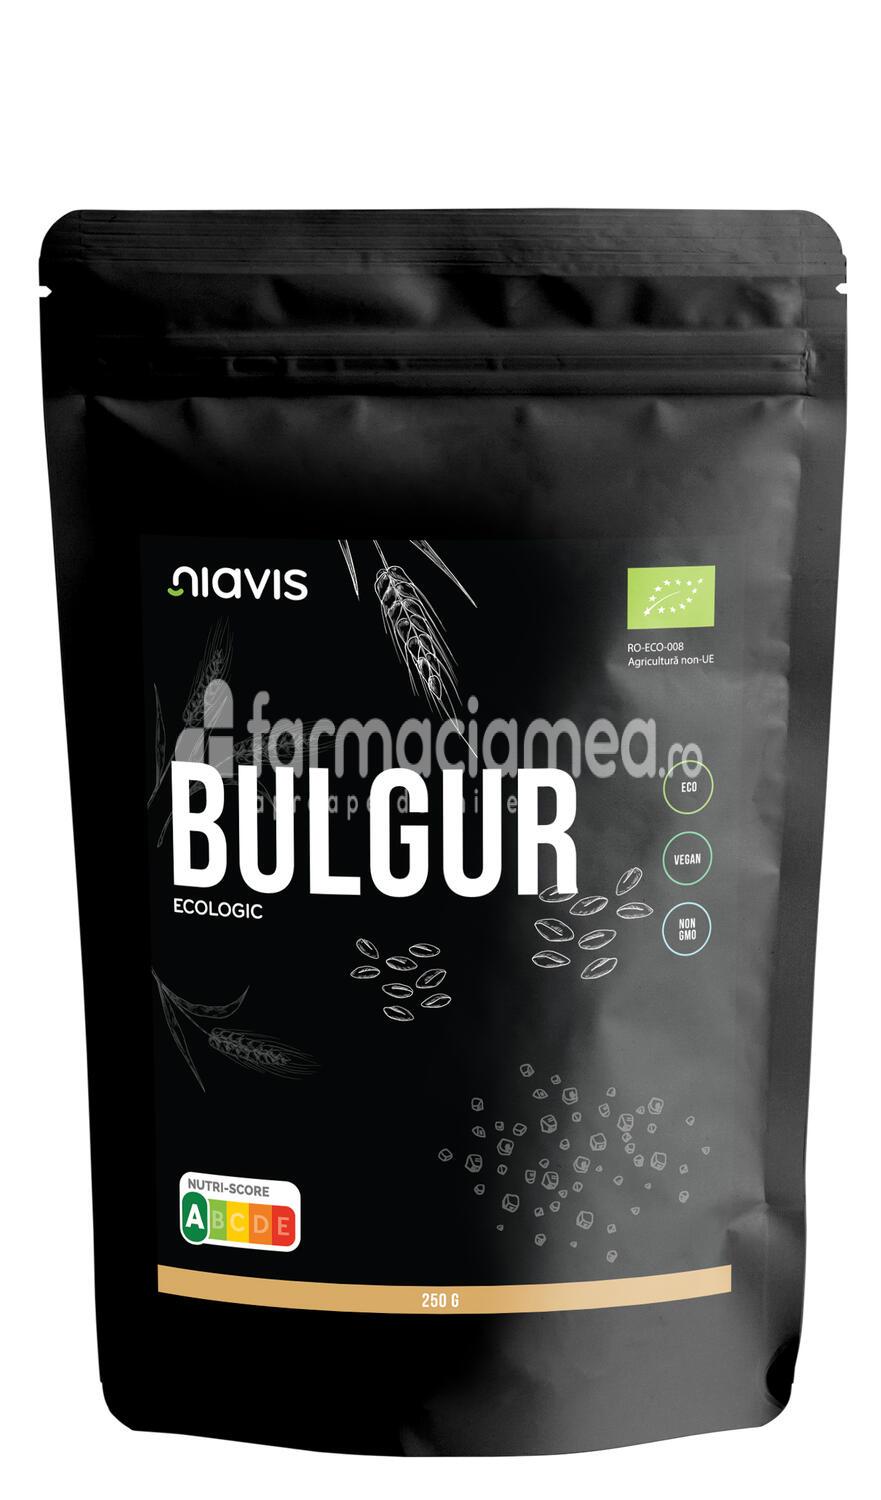 Alimente și băuturi - Niavis Bulgur ecologic Bio, 250 g, farmaciamea.ro